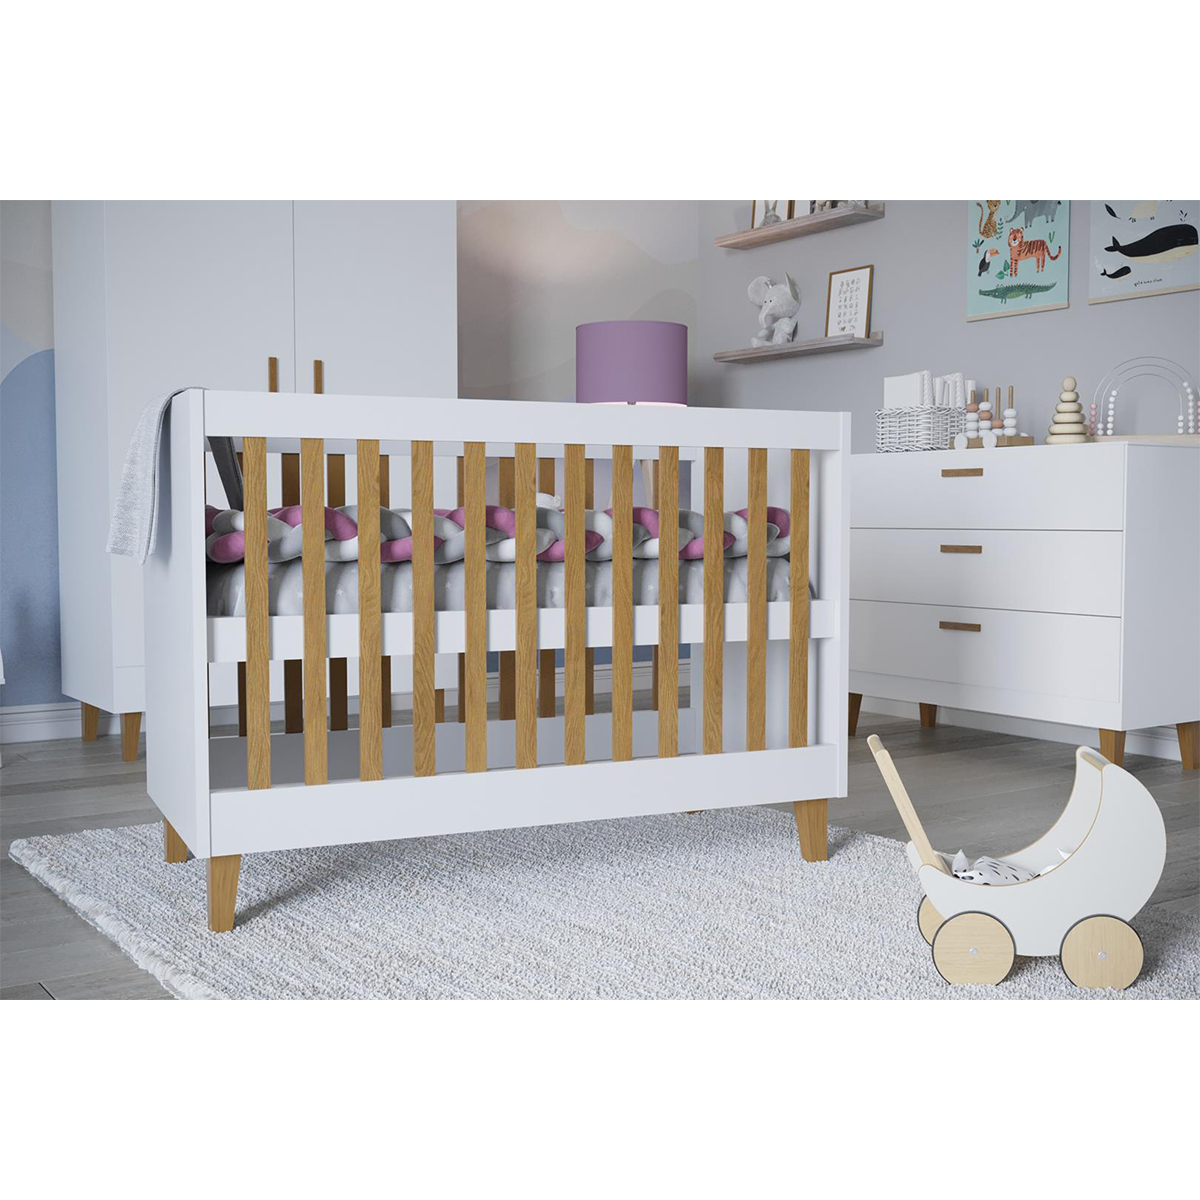 Chambre complète lit bébé 60x120, commode et armoire Kocot Kids Kubi - Blanc